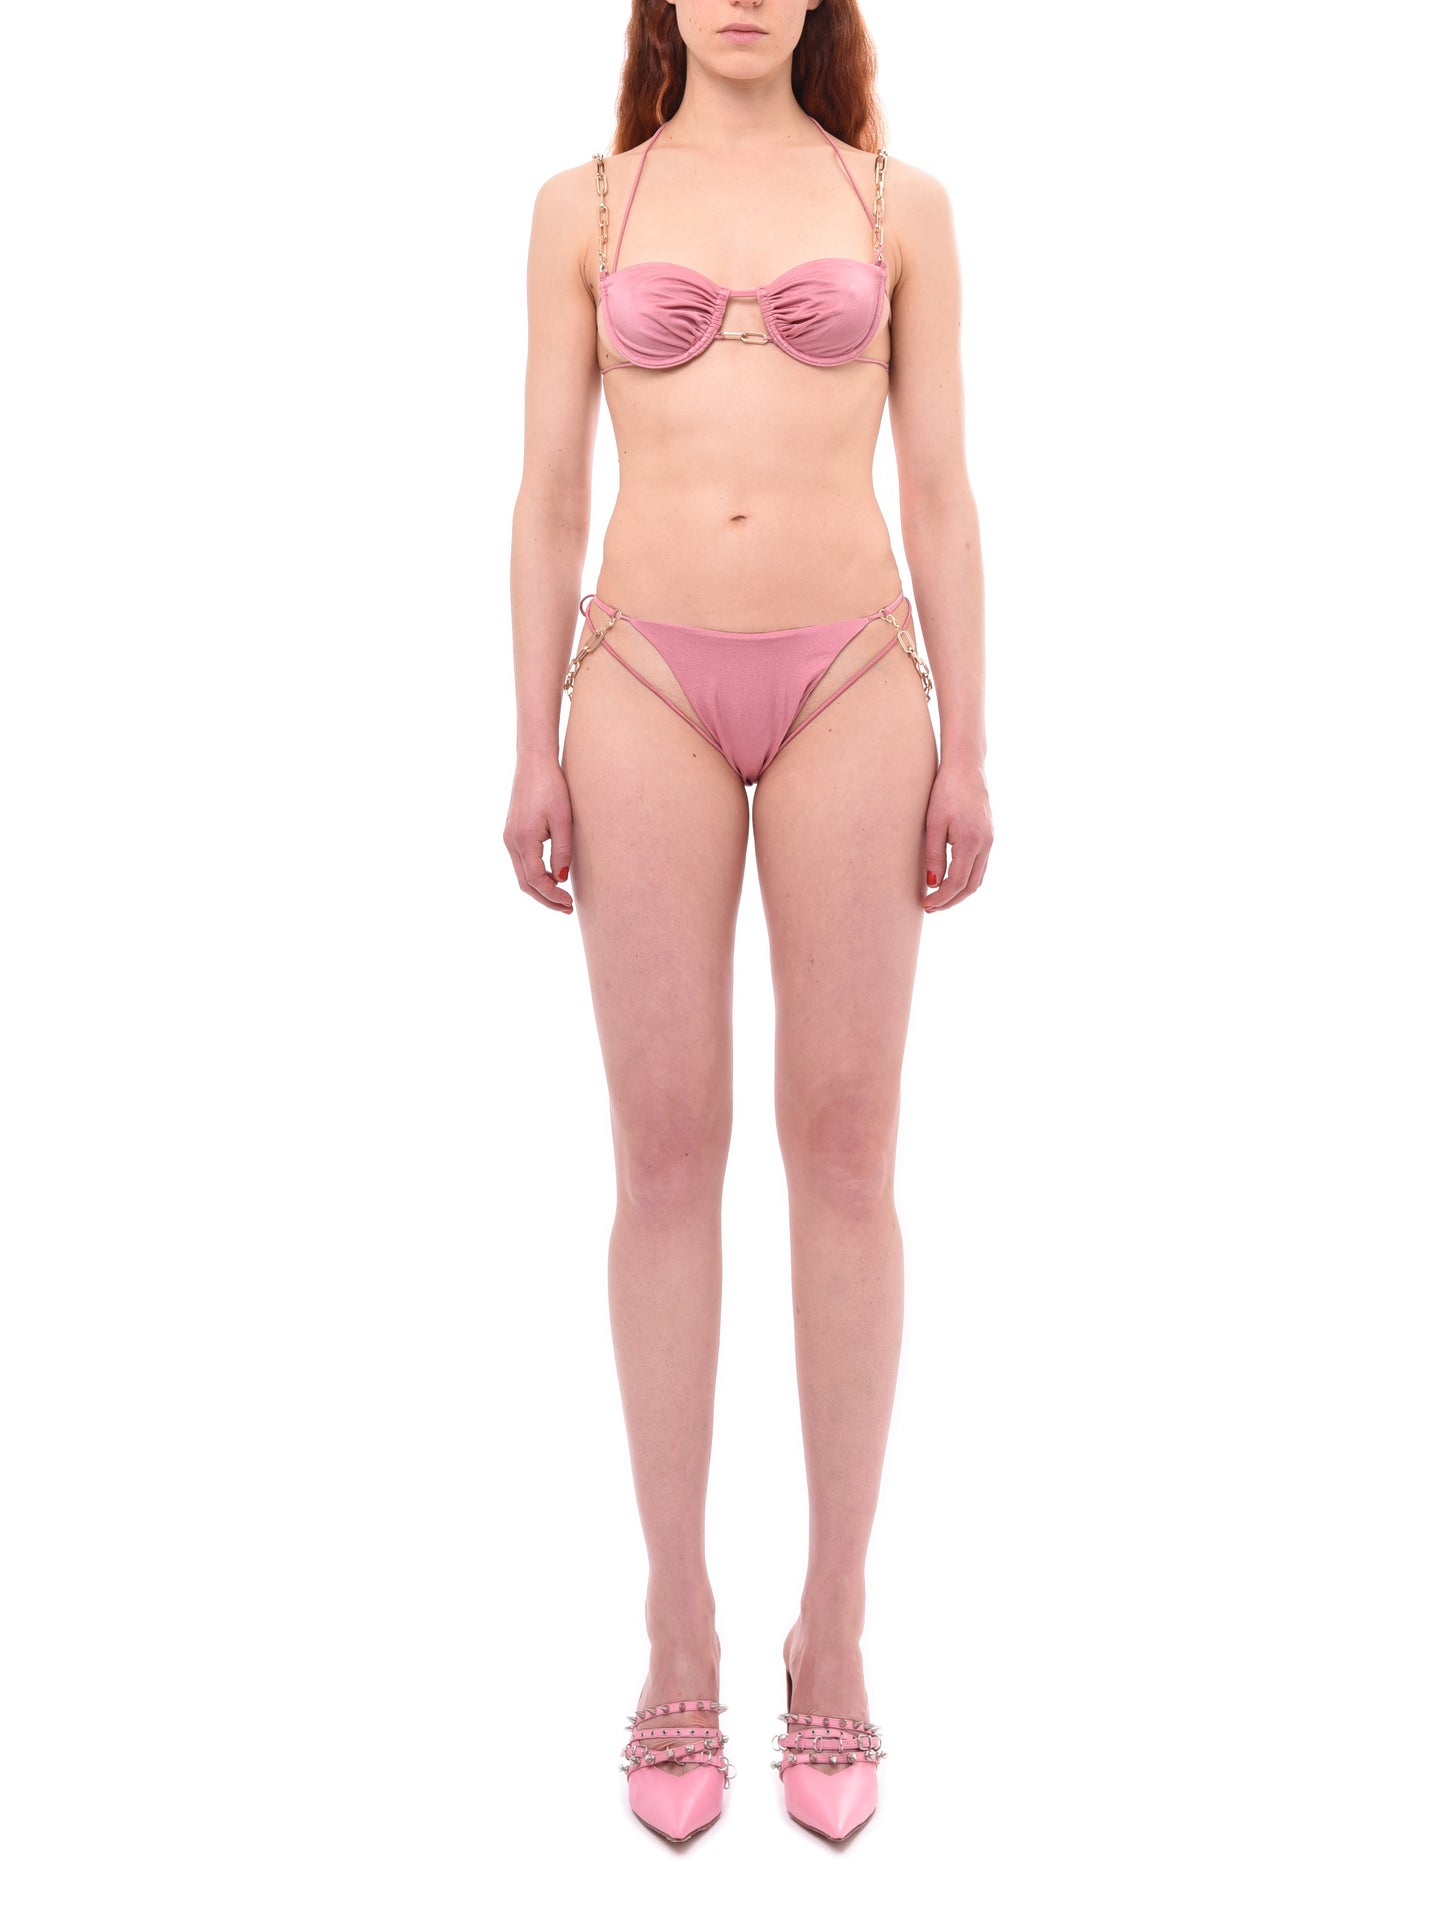 Dilara Findikoglu Belly Dancer Pink Bikini Bottom